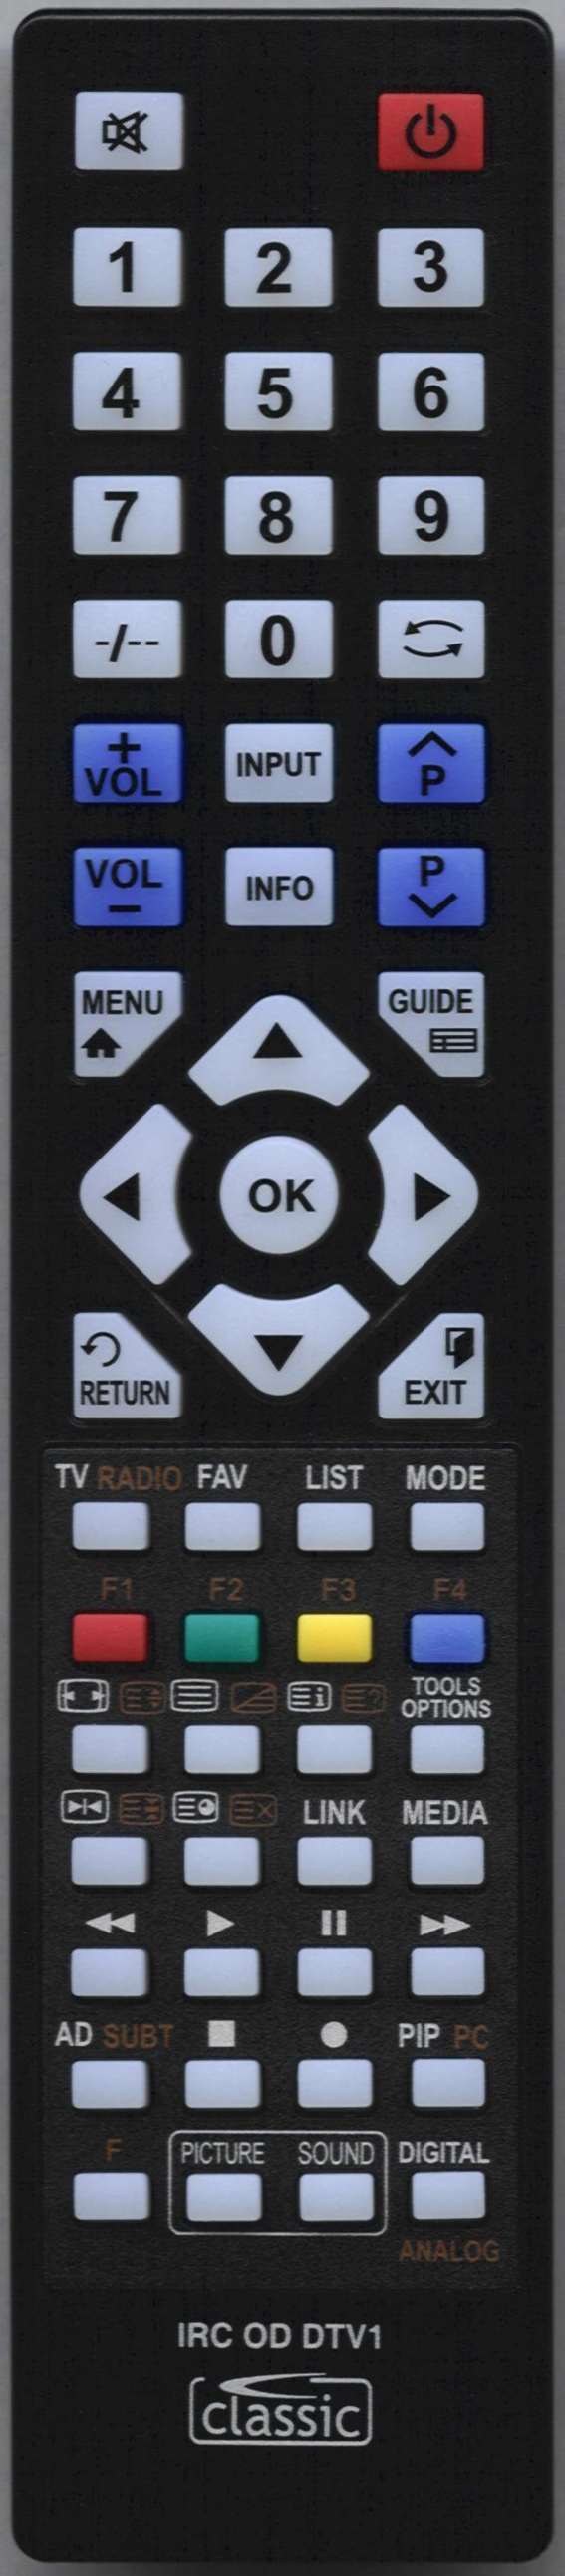 LUXOR LUX0155005/01 Remote Control Alternative